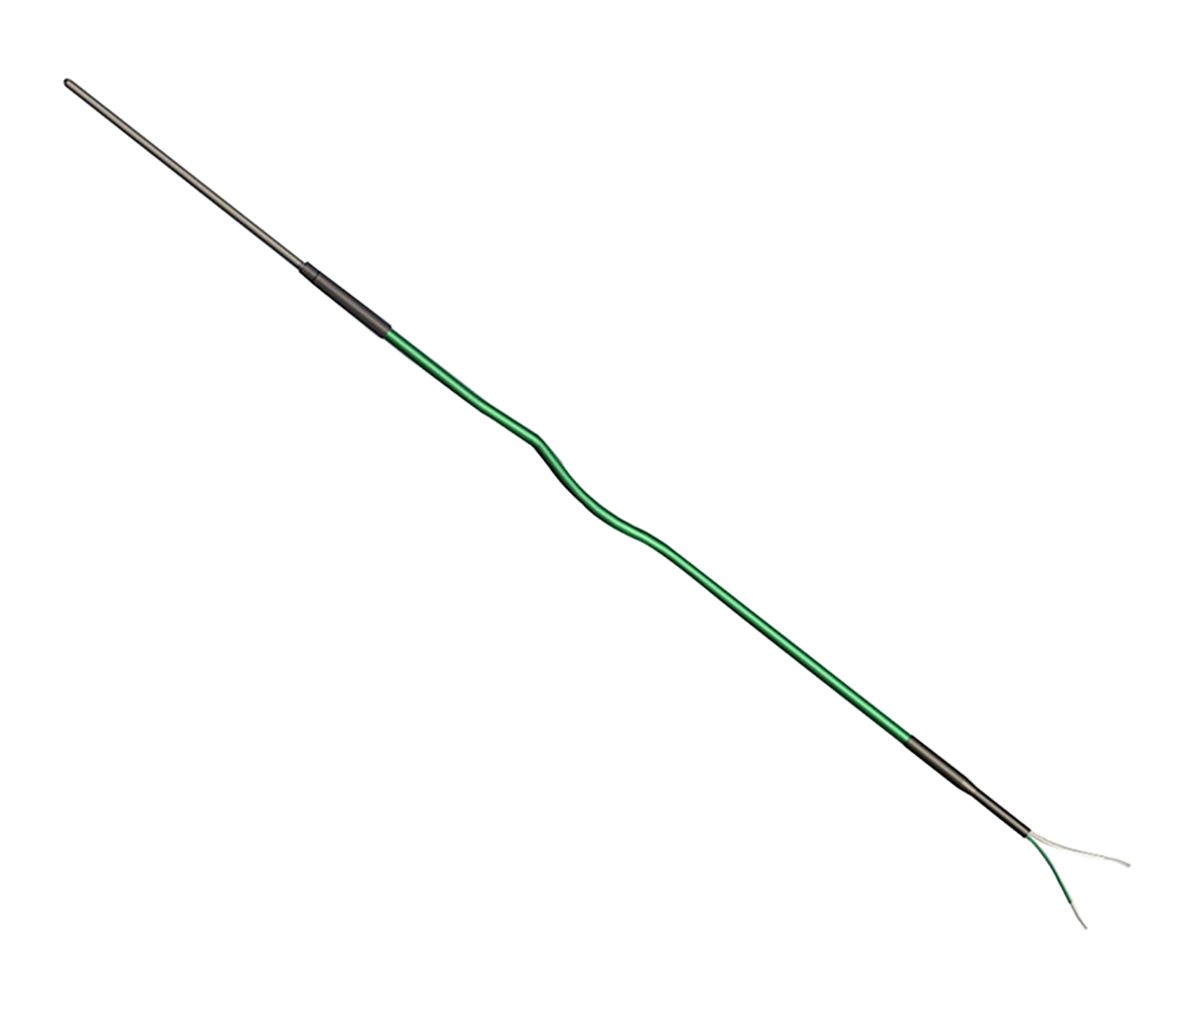 Termopar tipo K Correge, Ø sonda 1.5mm x 1m, temp. máx +1200°C, cable de 2m, conexión Cable